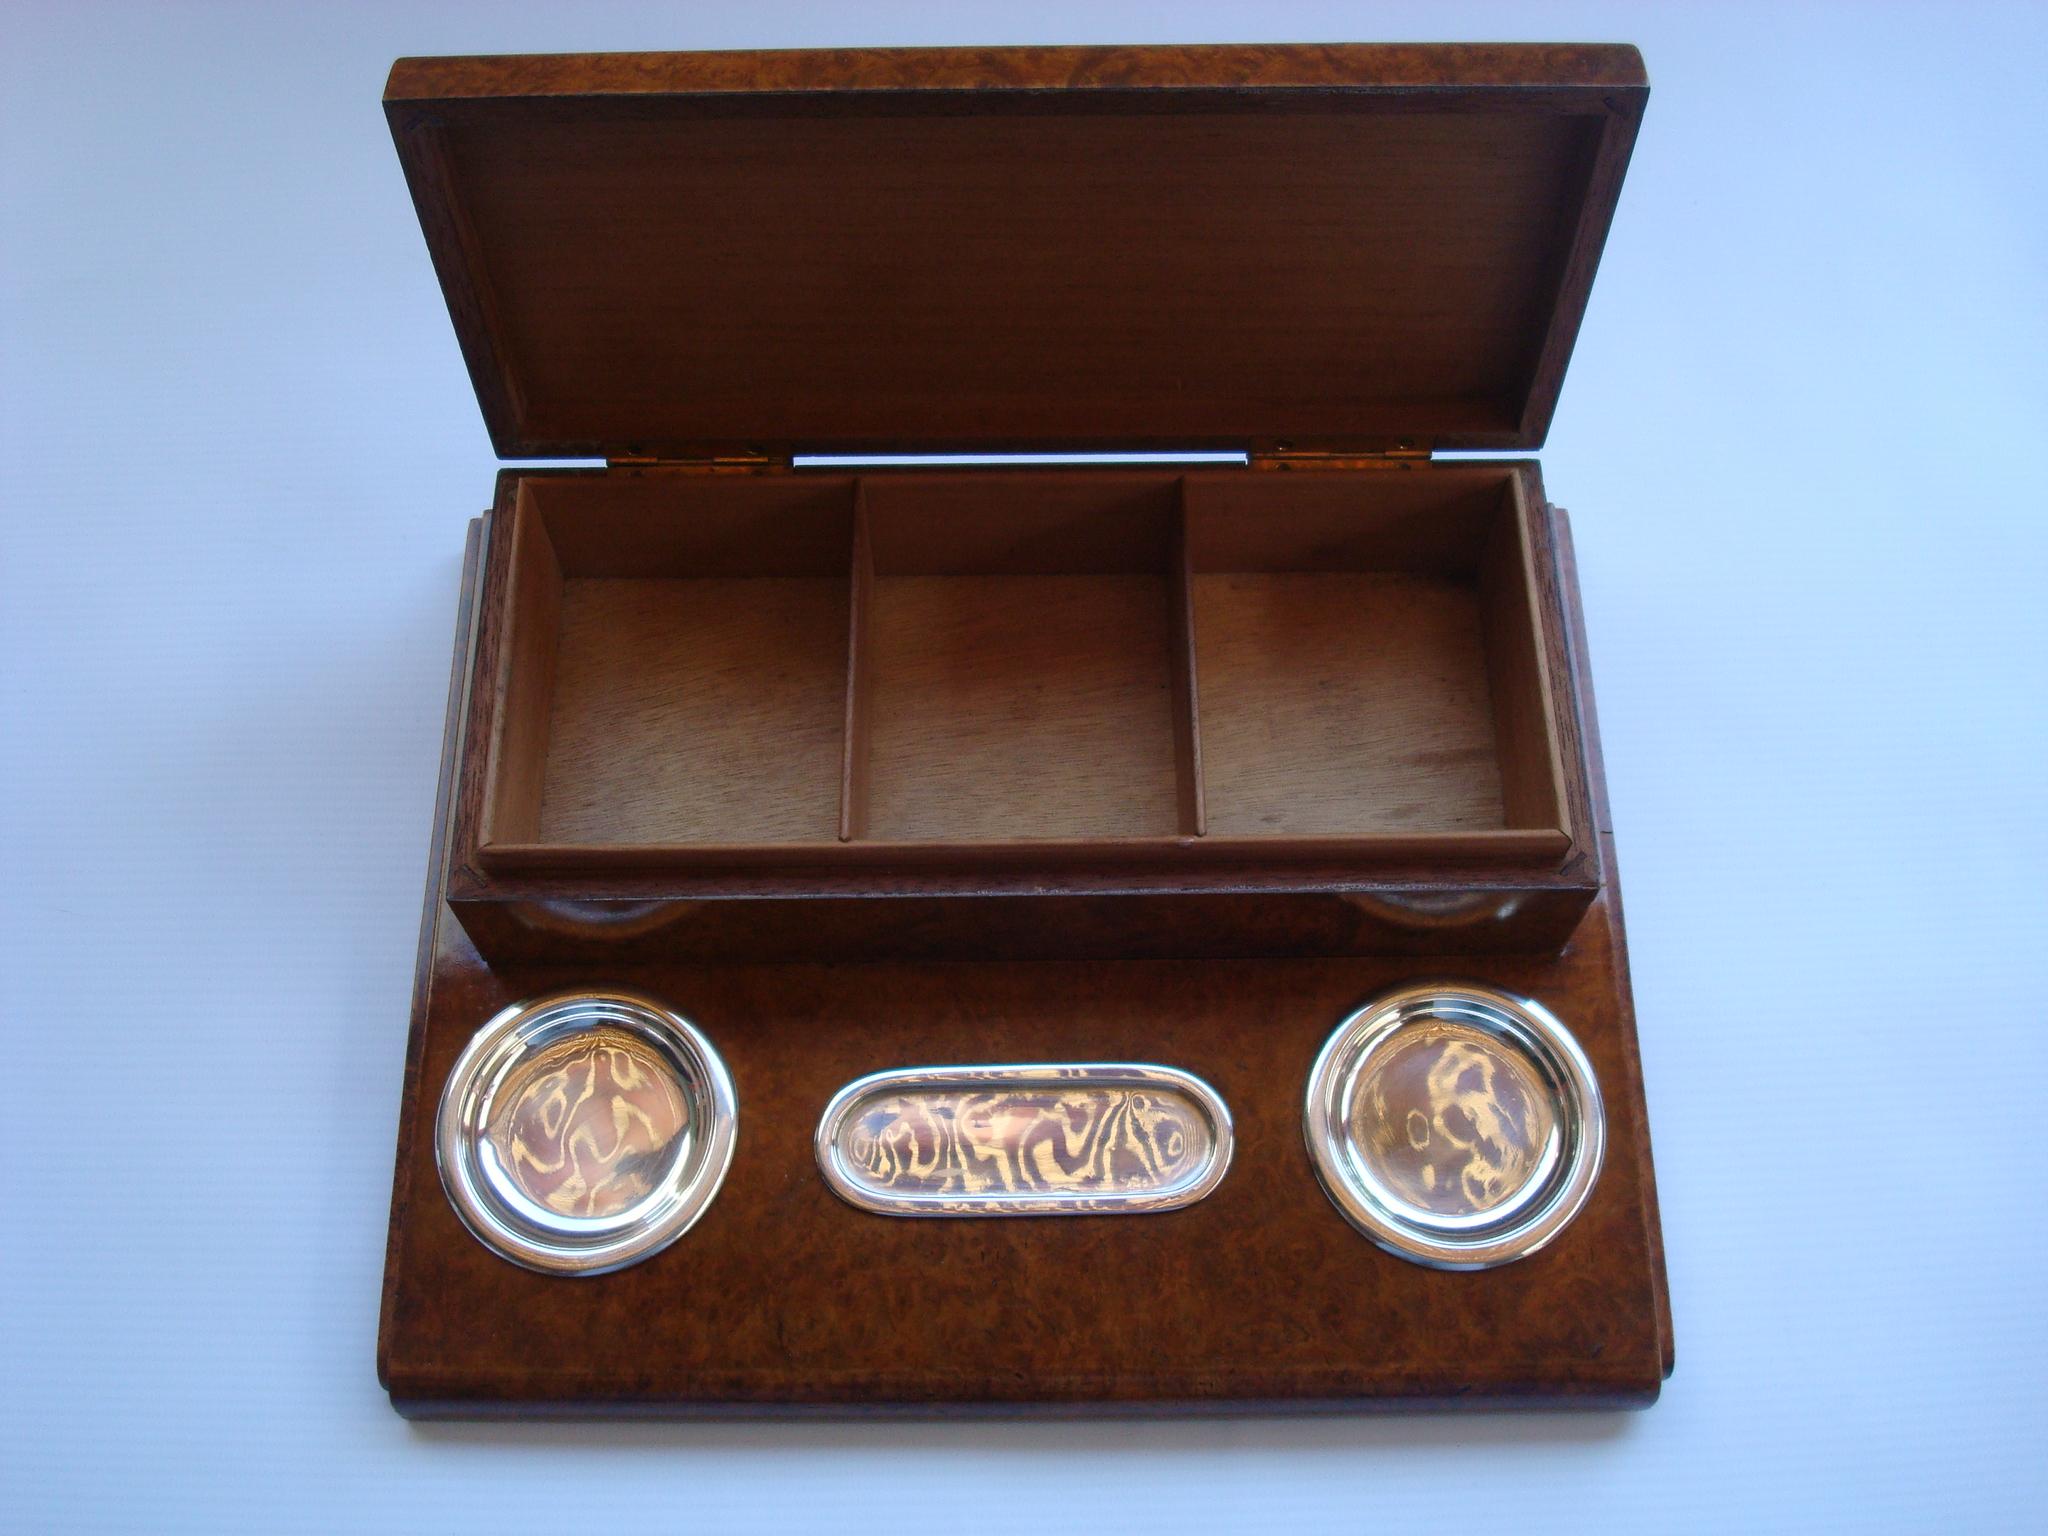 Gustave Keller Paris Cigarette / Cigar root box desk smokers set. France années 30.
La boîte peut être utilisée pour les cigarettes et les cigares, car elle possède deux petites parois en bois qui peuvent être déplacées en fonction de l'usage que